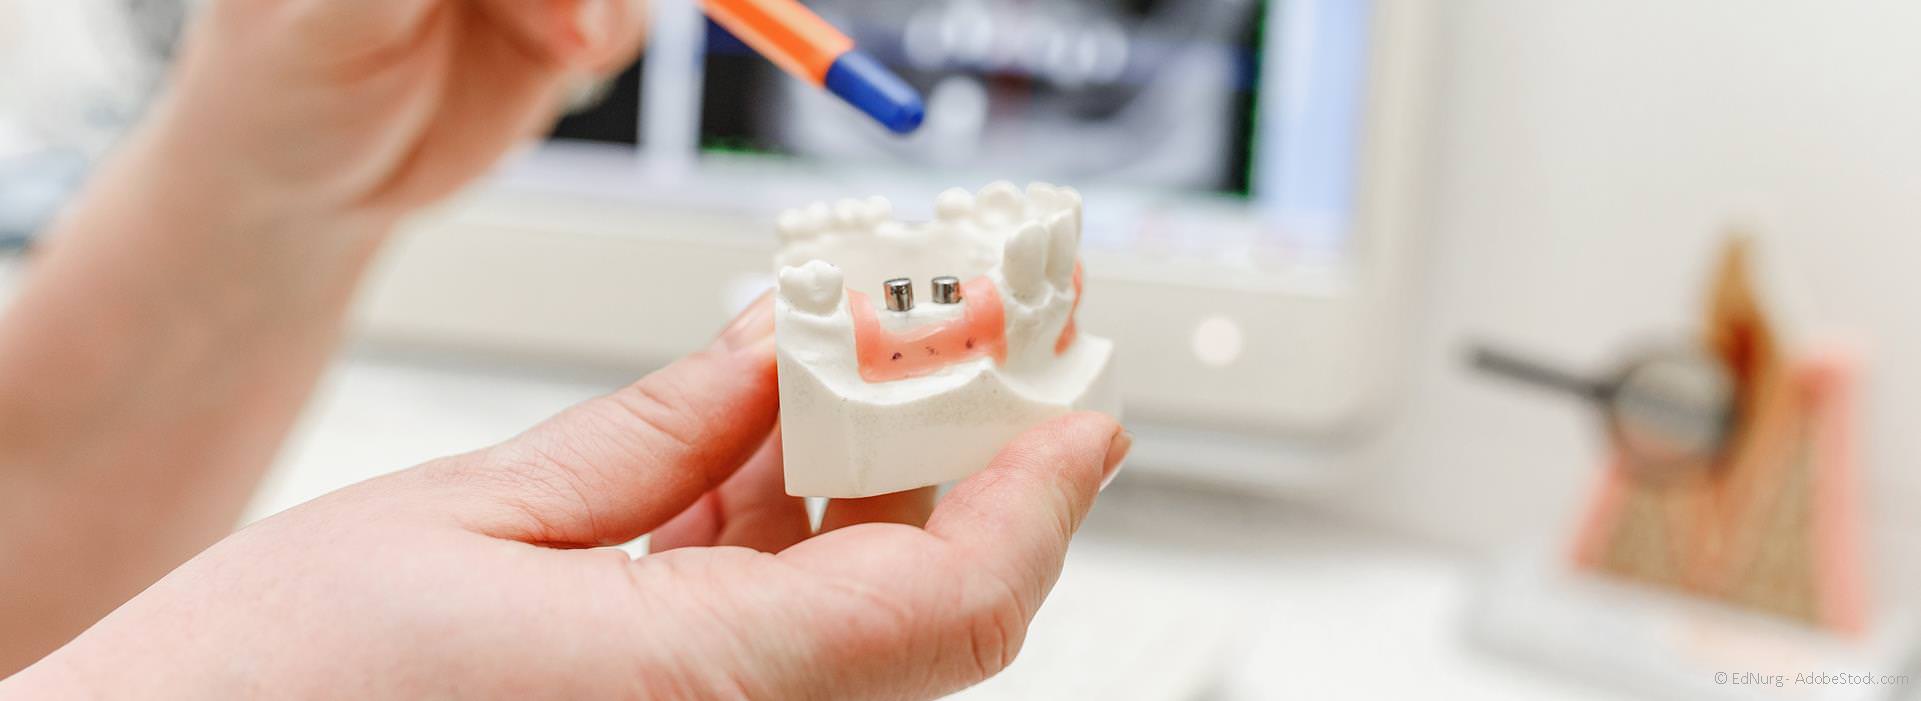 PZR bei Zahnersatz, Implantaten und Kieferorthopädie